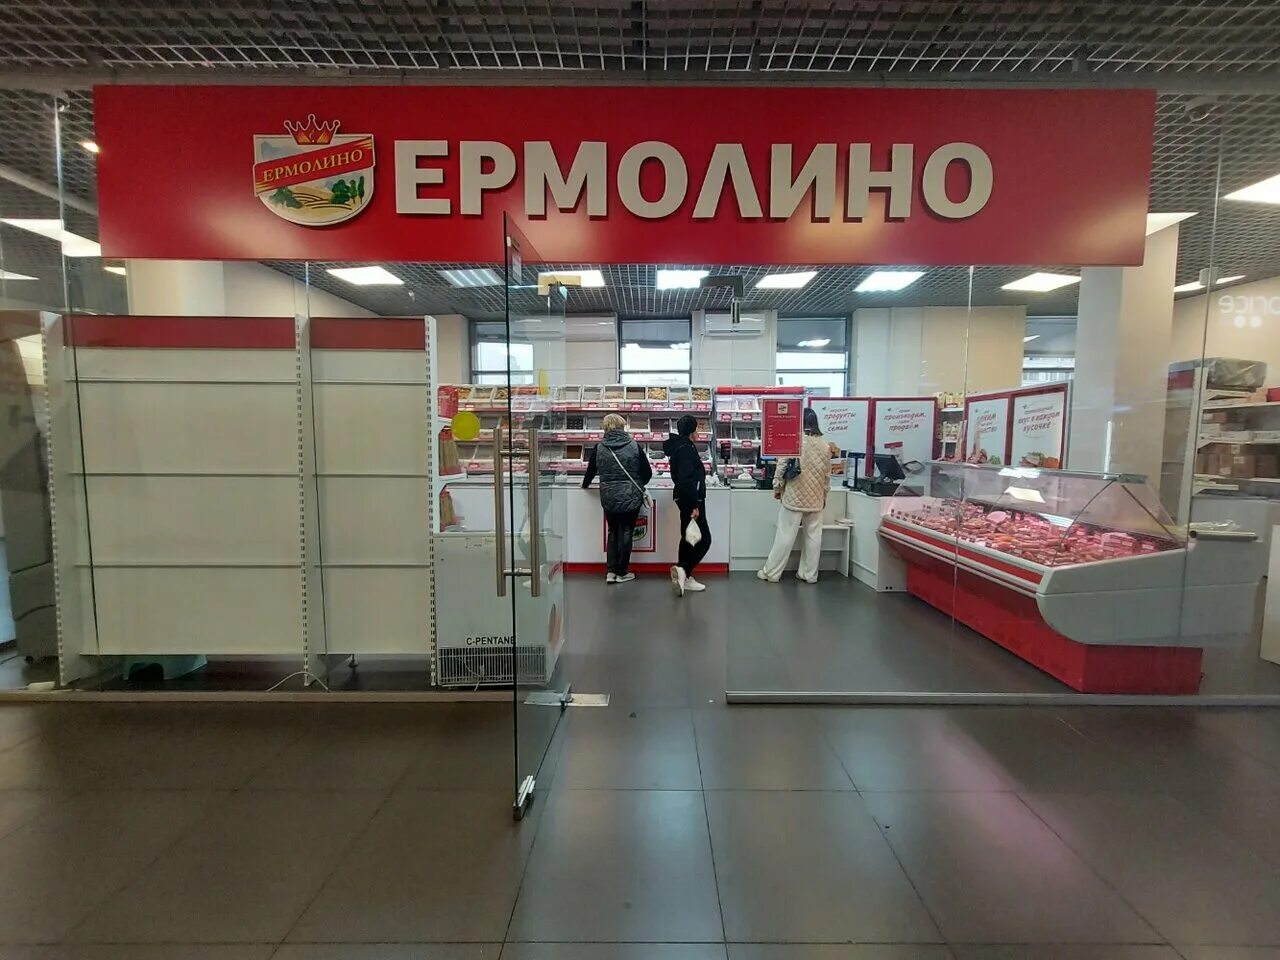 Цены в магазине ермолино в москве. Ермолино магазины. Продукты Ермолино магазины в Москве. Ермолино магазины в Москве. Ермолино город центр.